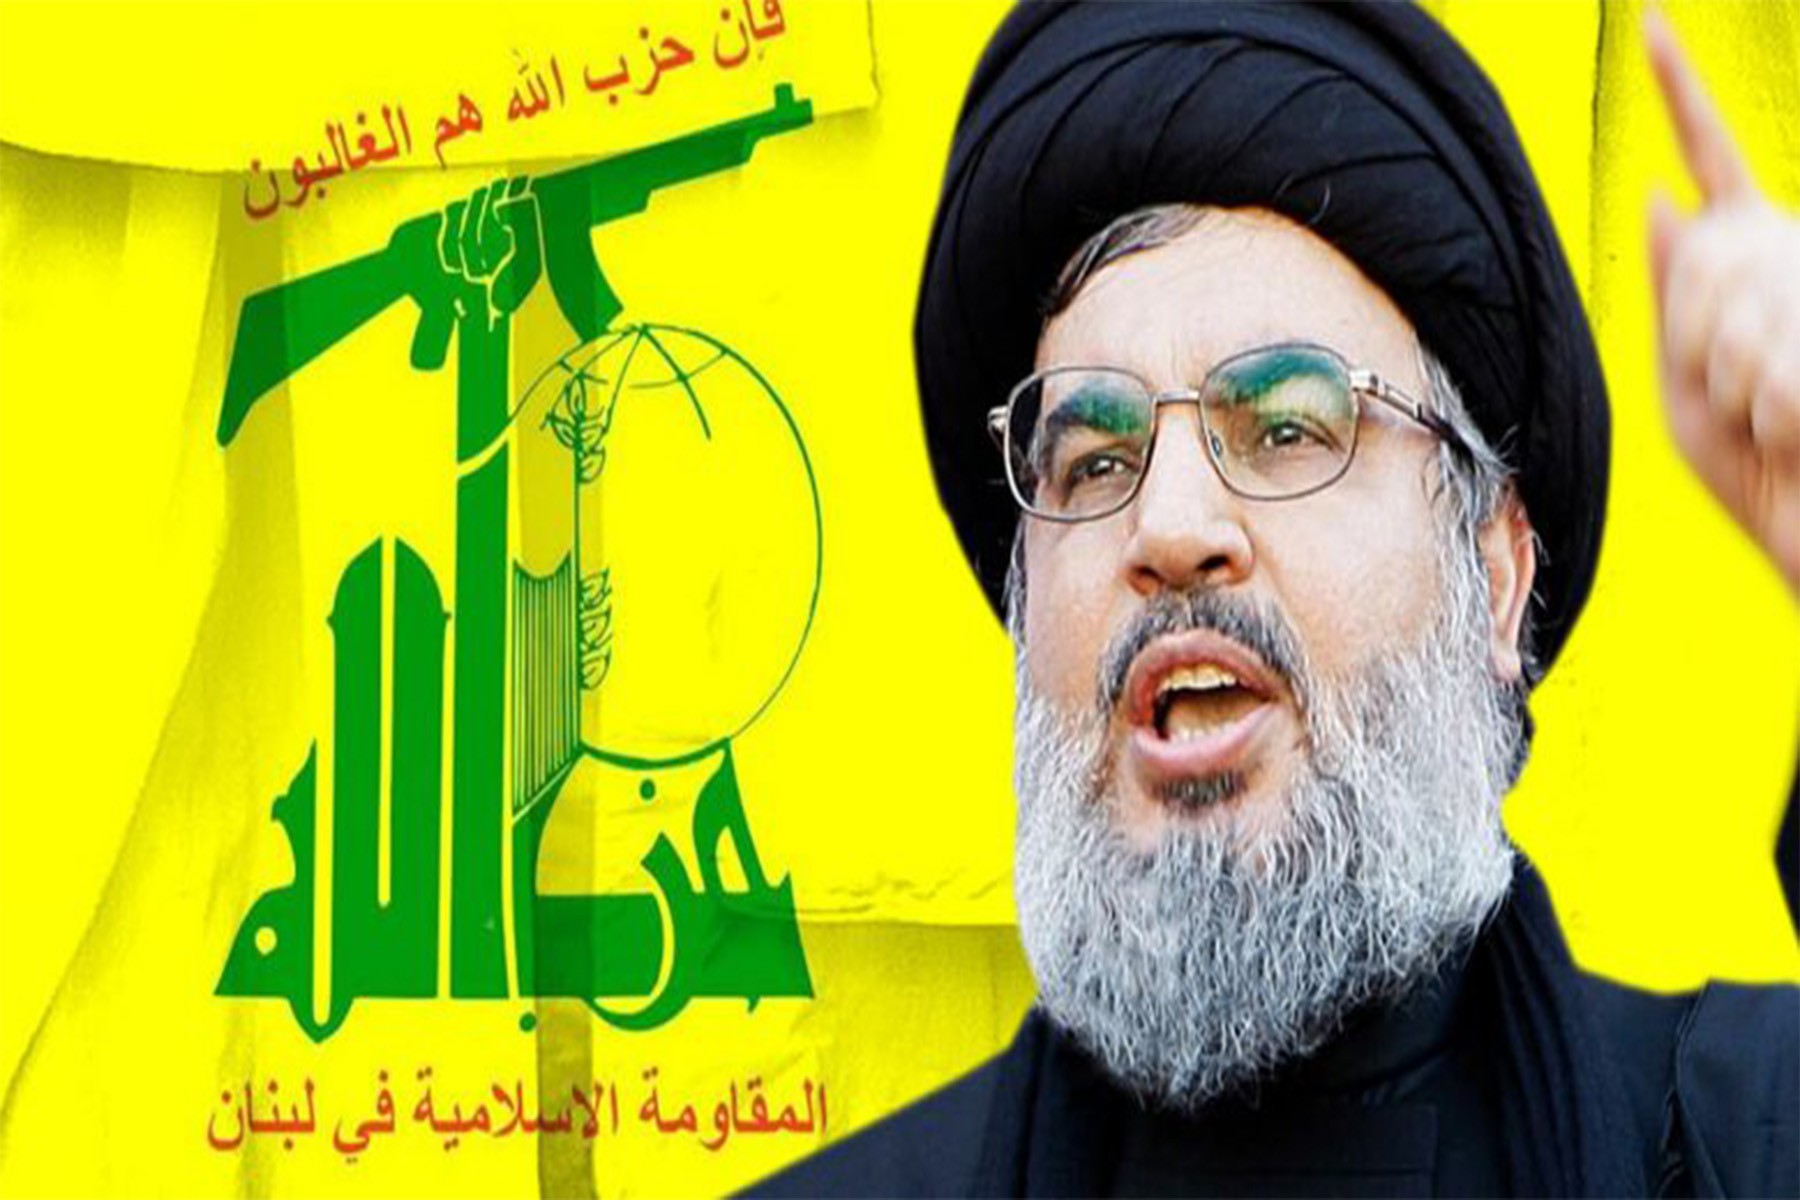 حزب الله در مرز اسرائیل: چالش و تهدید تازه در خاورمیانه